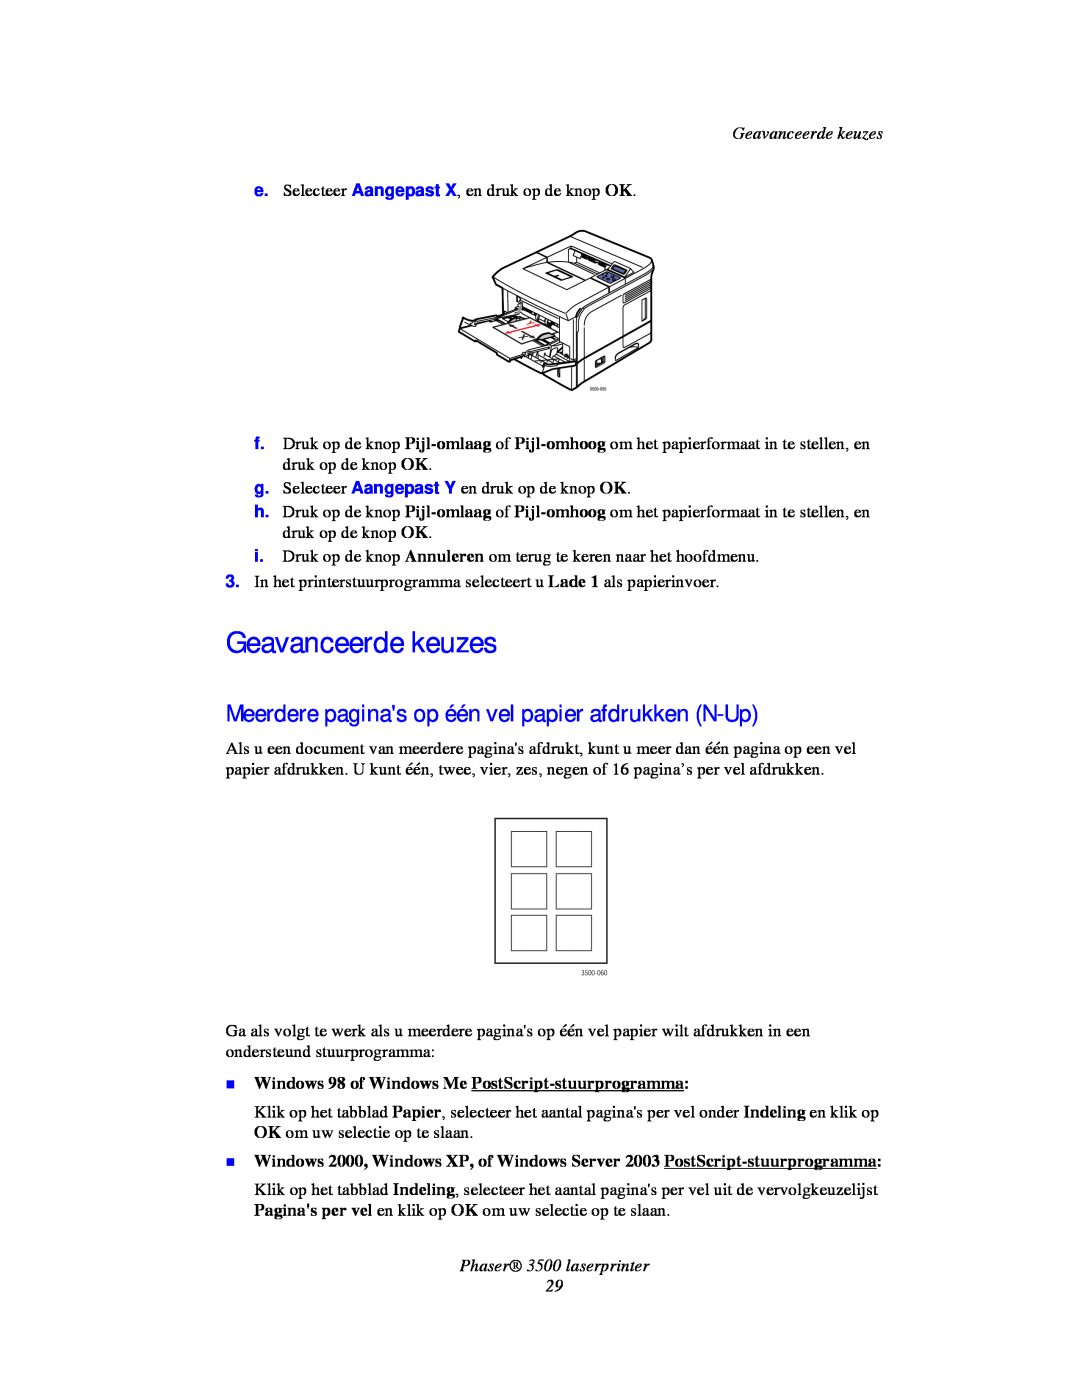 Xerox manual Geavanceerde keuzes, Meerdere paginas op één vel papier afdrukken N-Up, Phaser 3500 laserprinter 